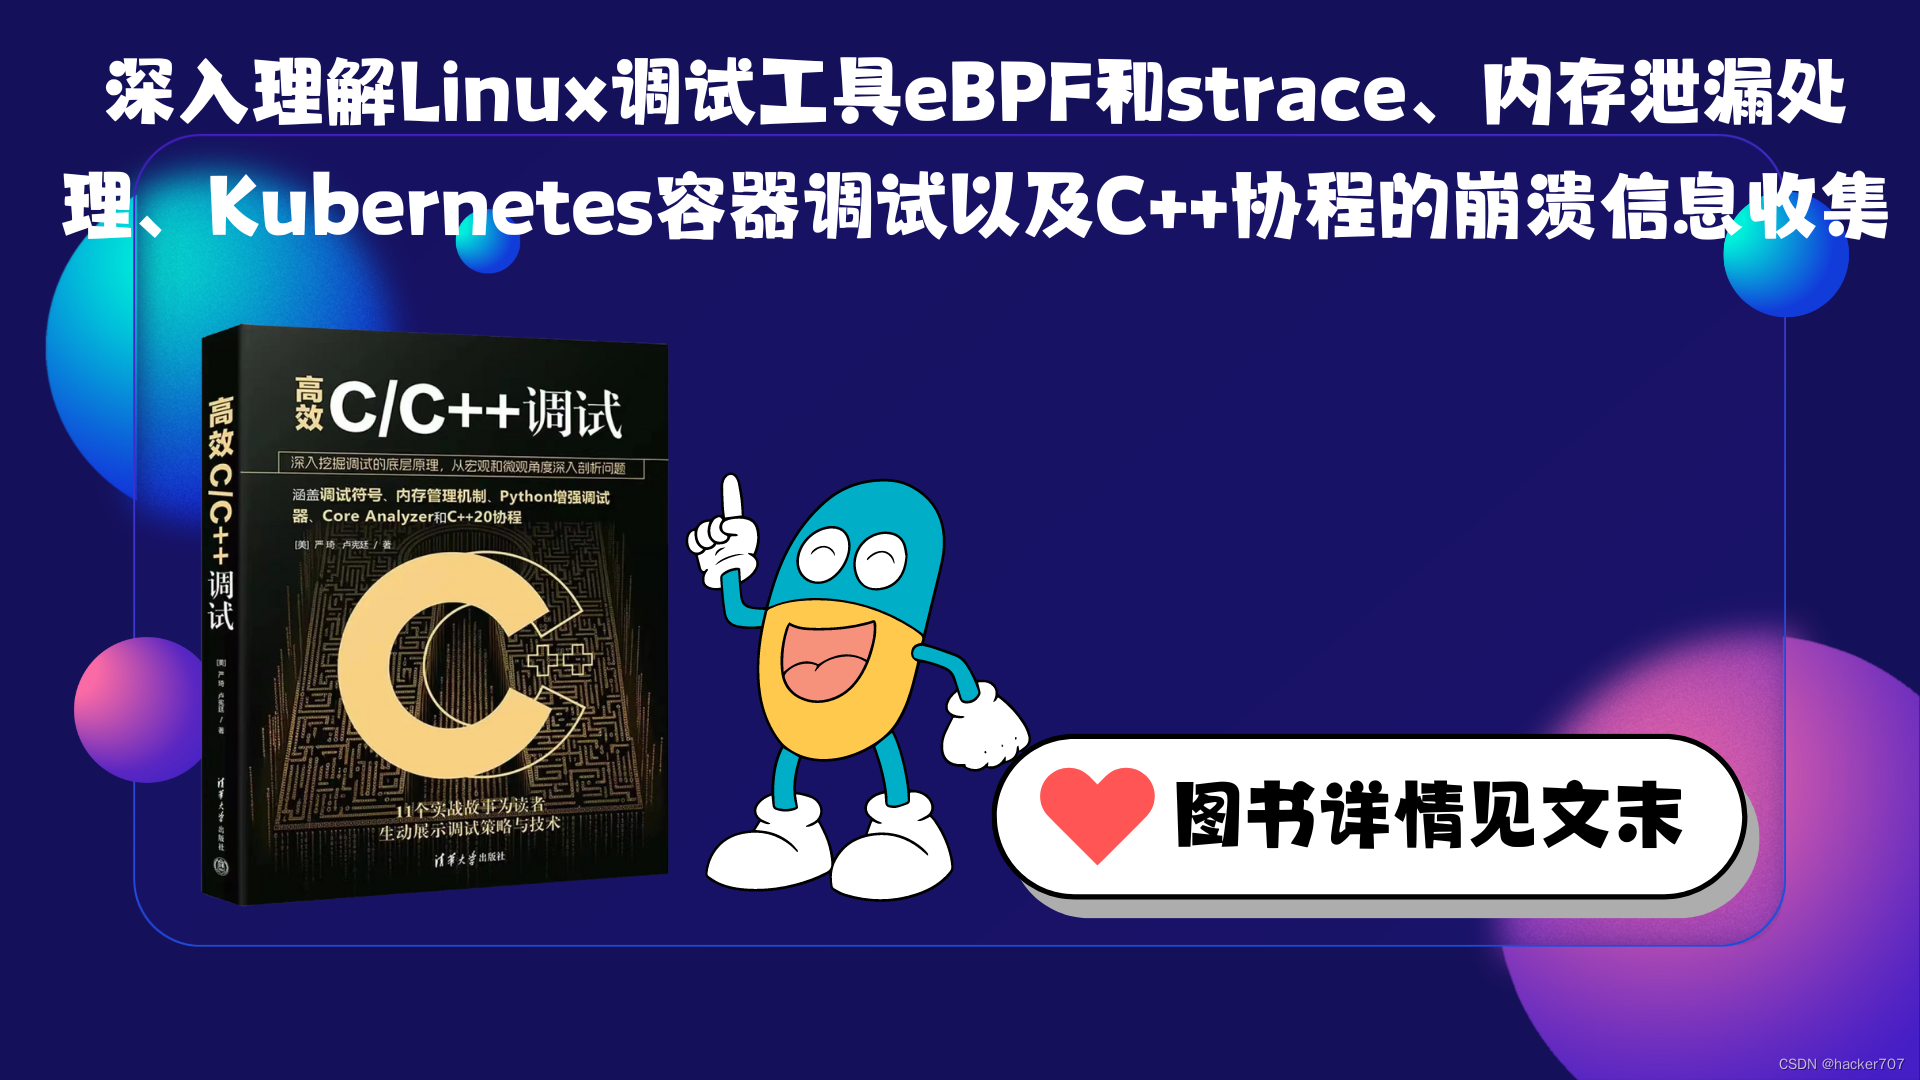 深入理解Linux调试工具eBPF和strace、内存泄漏处理、Kubernetes容器调试以及C++协程的崩溃信息收集